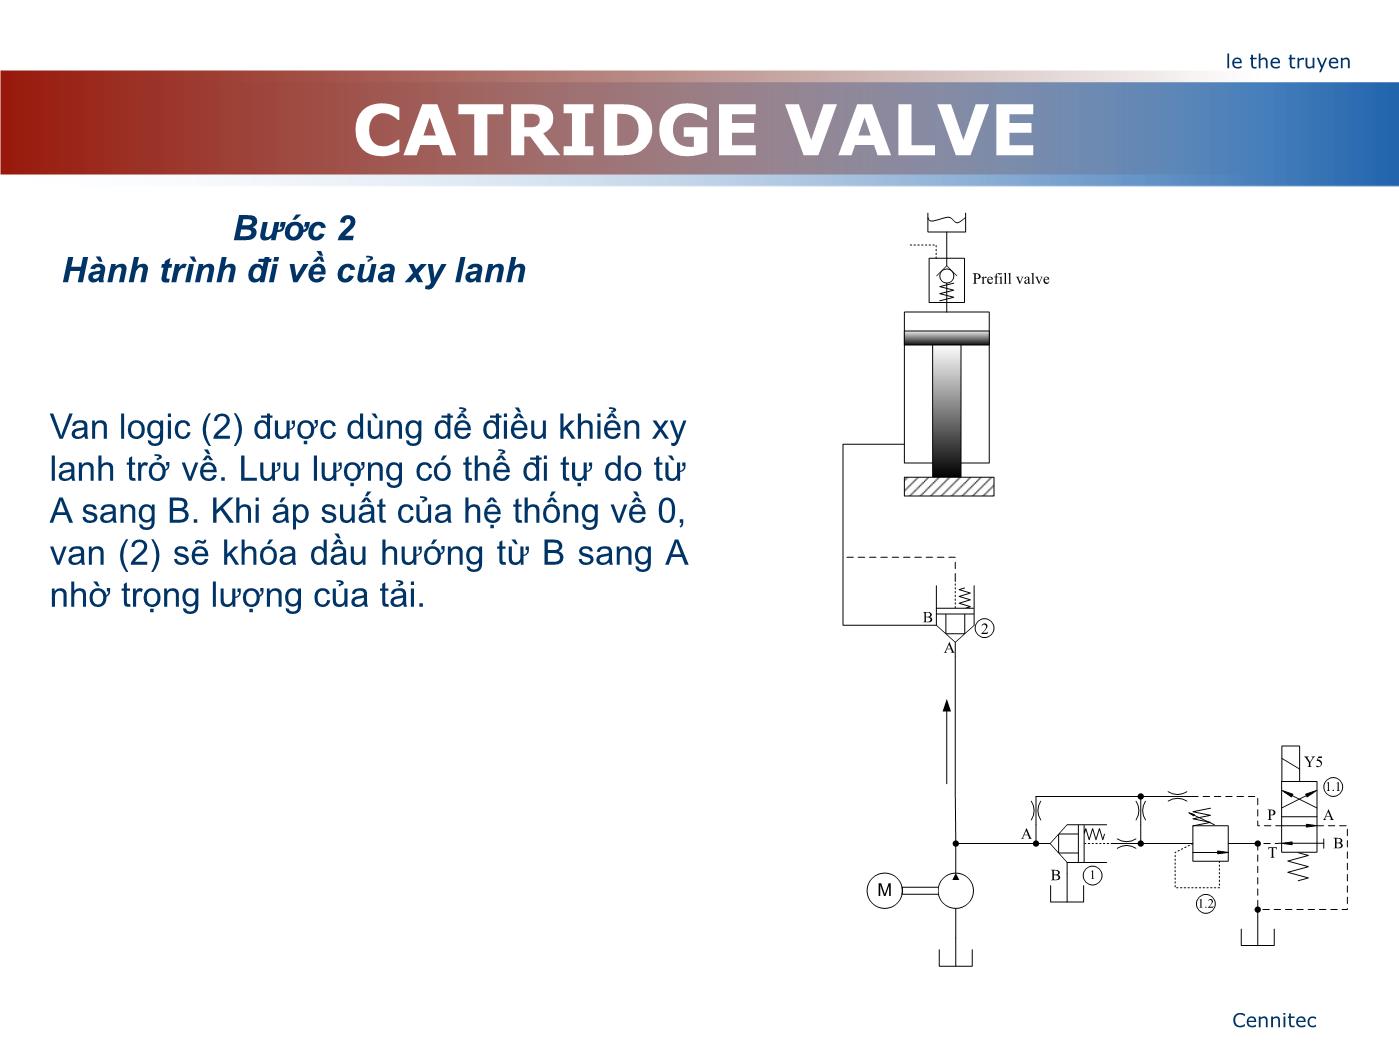 Bài giảng Truyển động thủy lực và khí - Chương 8: Catridge Valve - Lê Thế Truyền trang 10